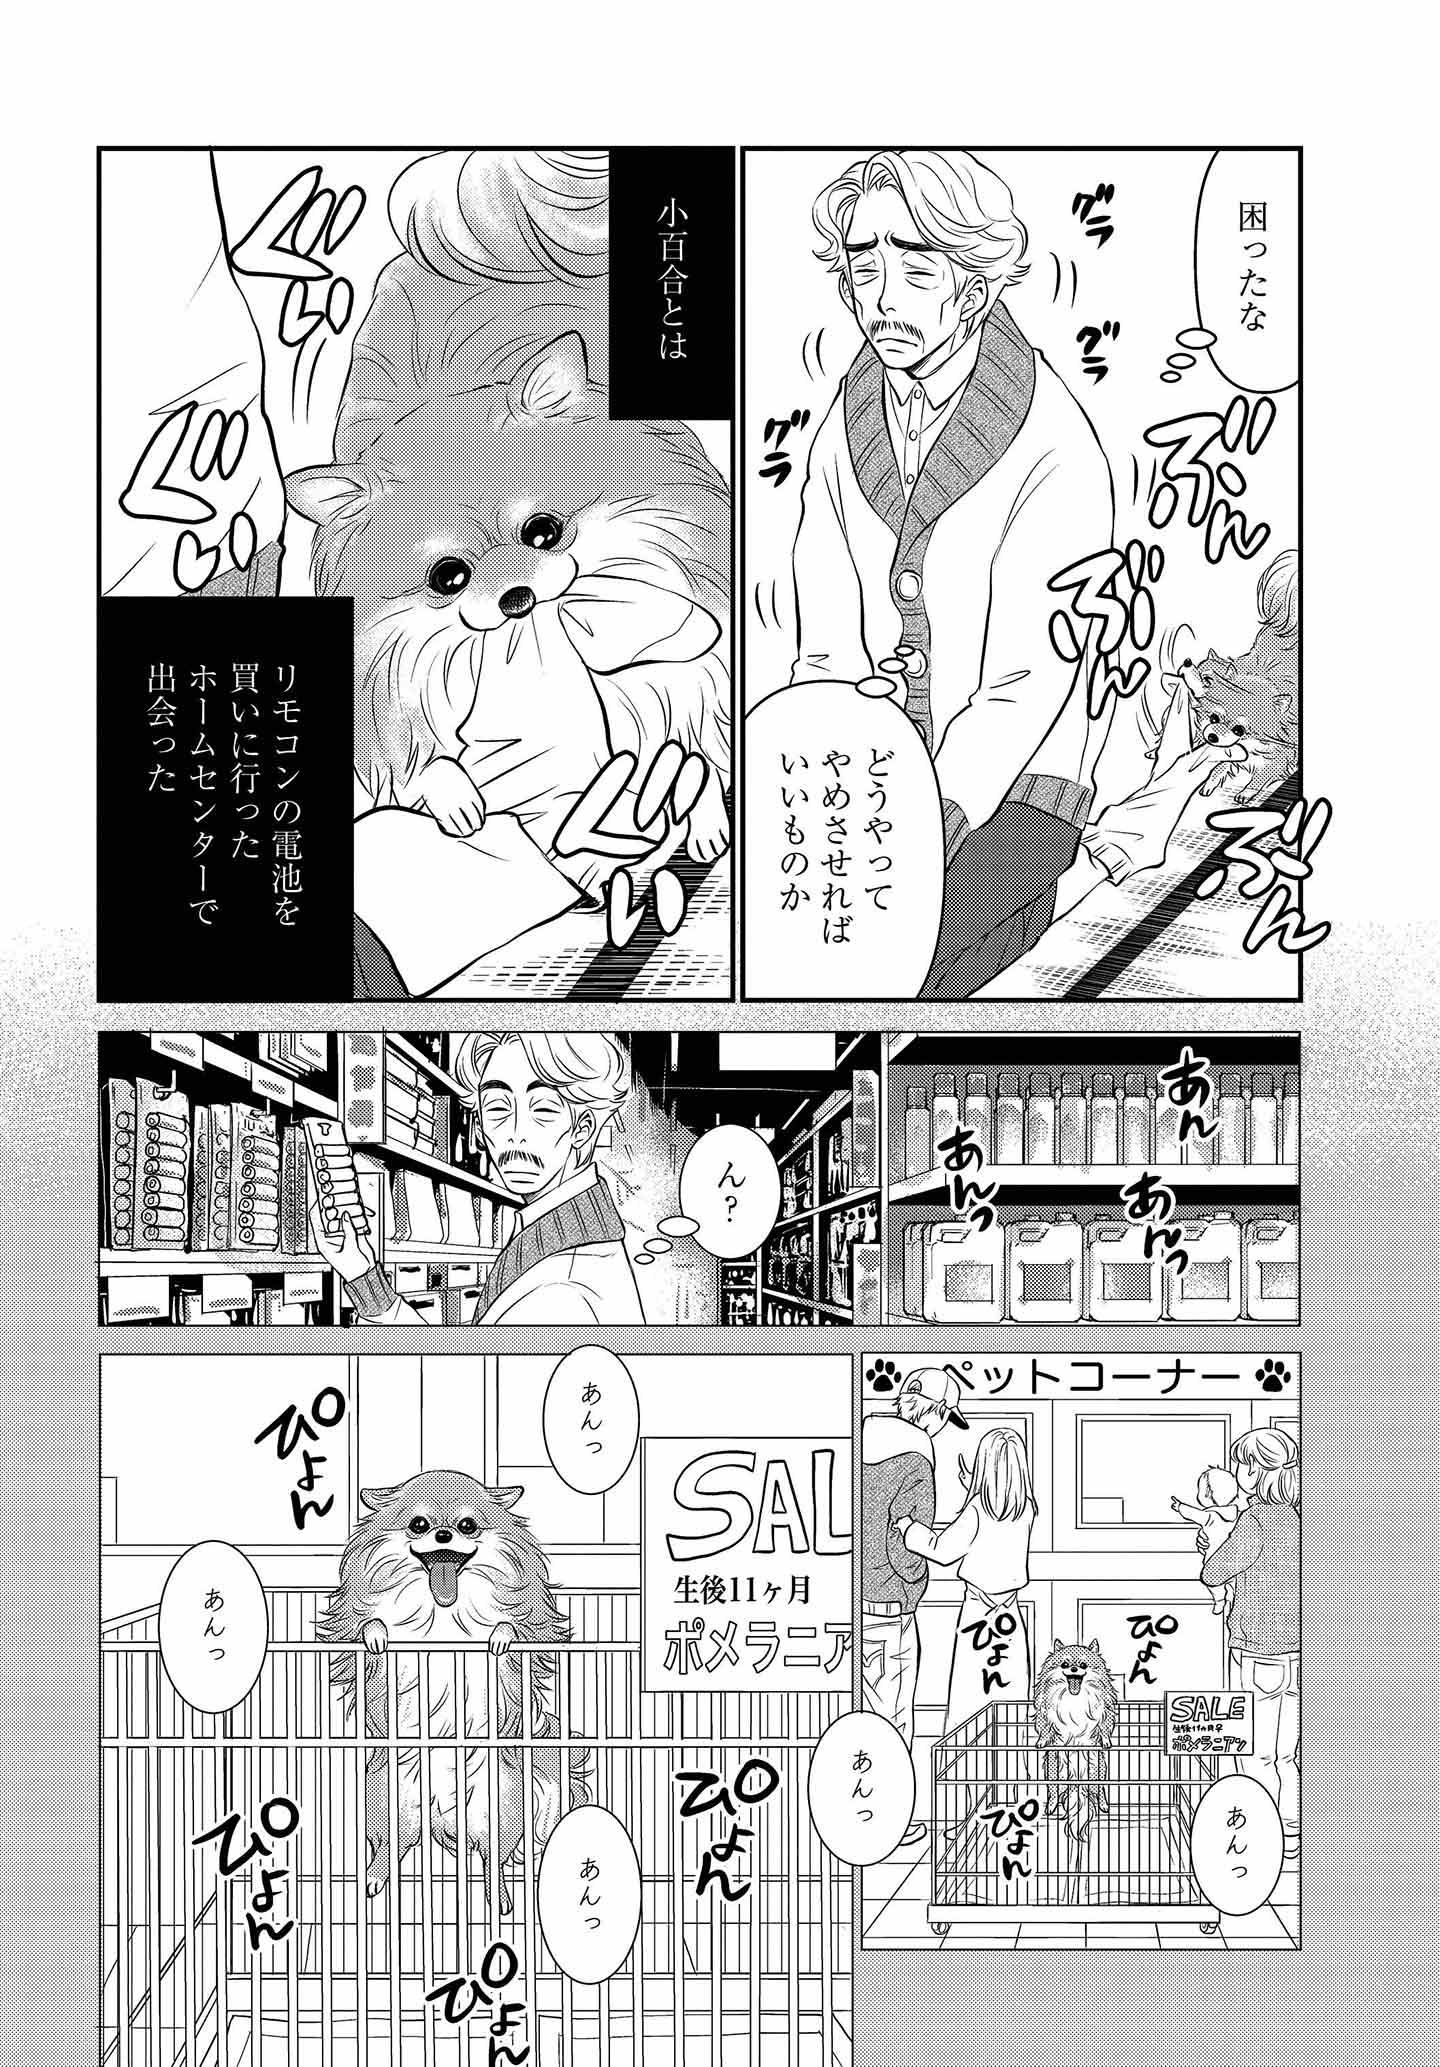 ドッグトレーニング漫画『DOG SIGNAL』32話目　2/4